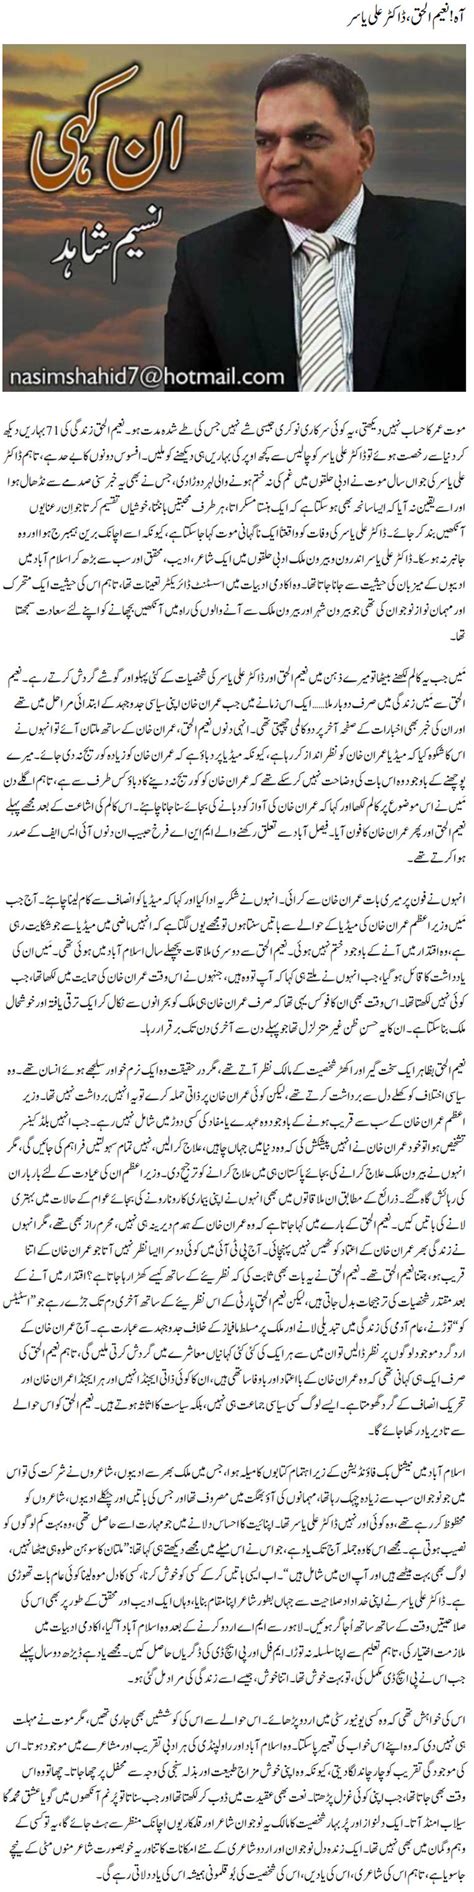 Aah Naeemul Haque Dr Ali Yasir Urdu Column By Naseem Shahid 18